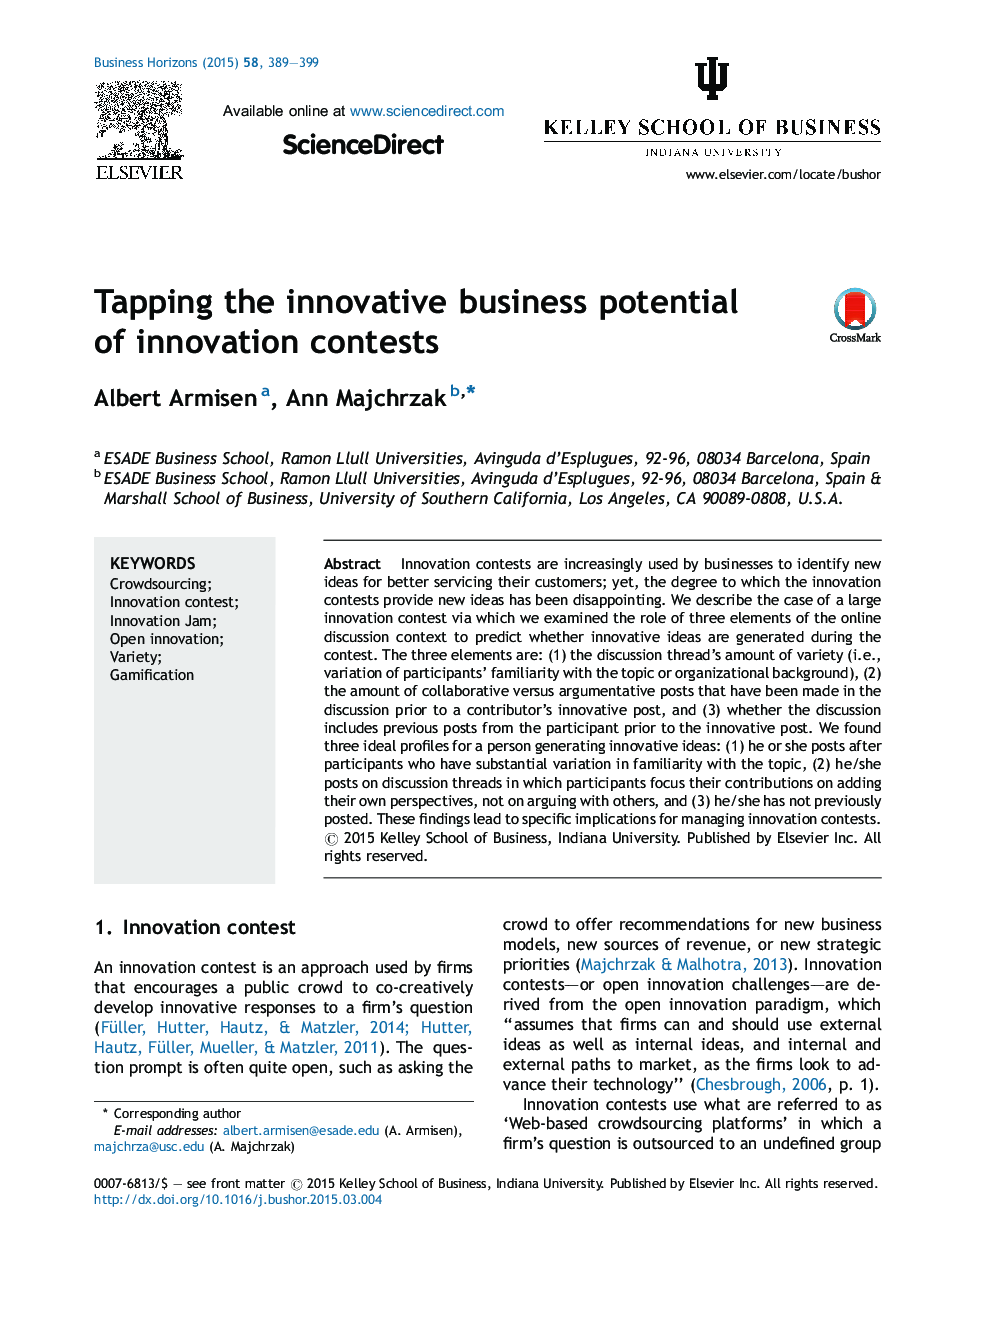 بهره برداری از پتانسیل نوآوری کسب و کار رقابت نوآوری 